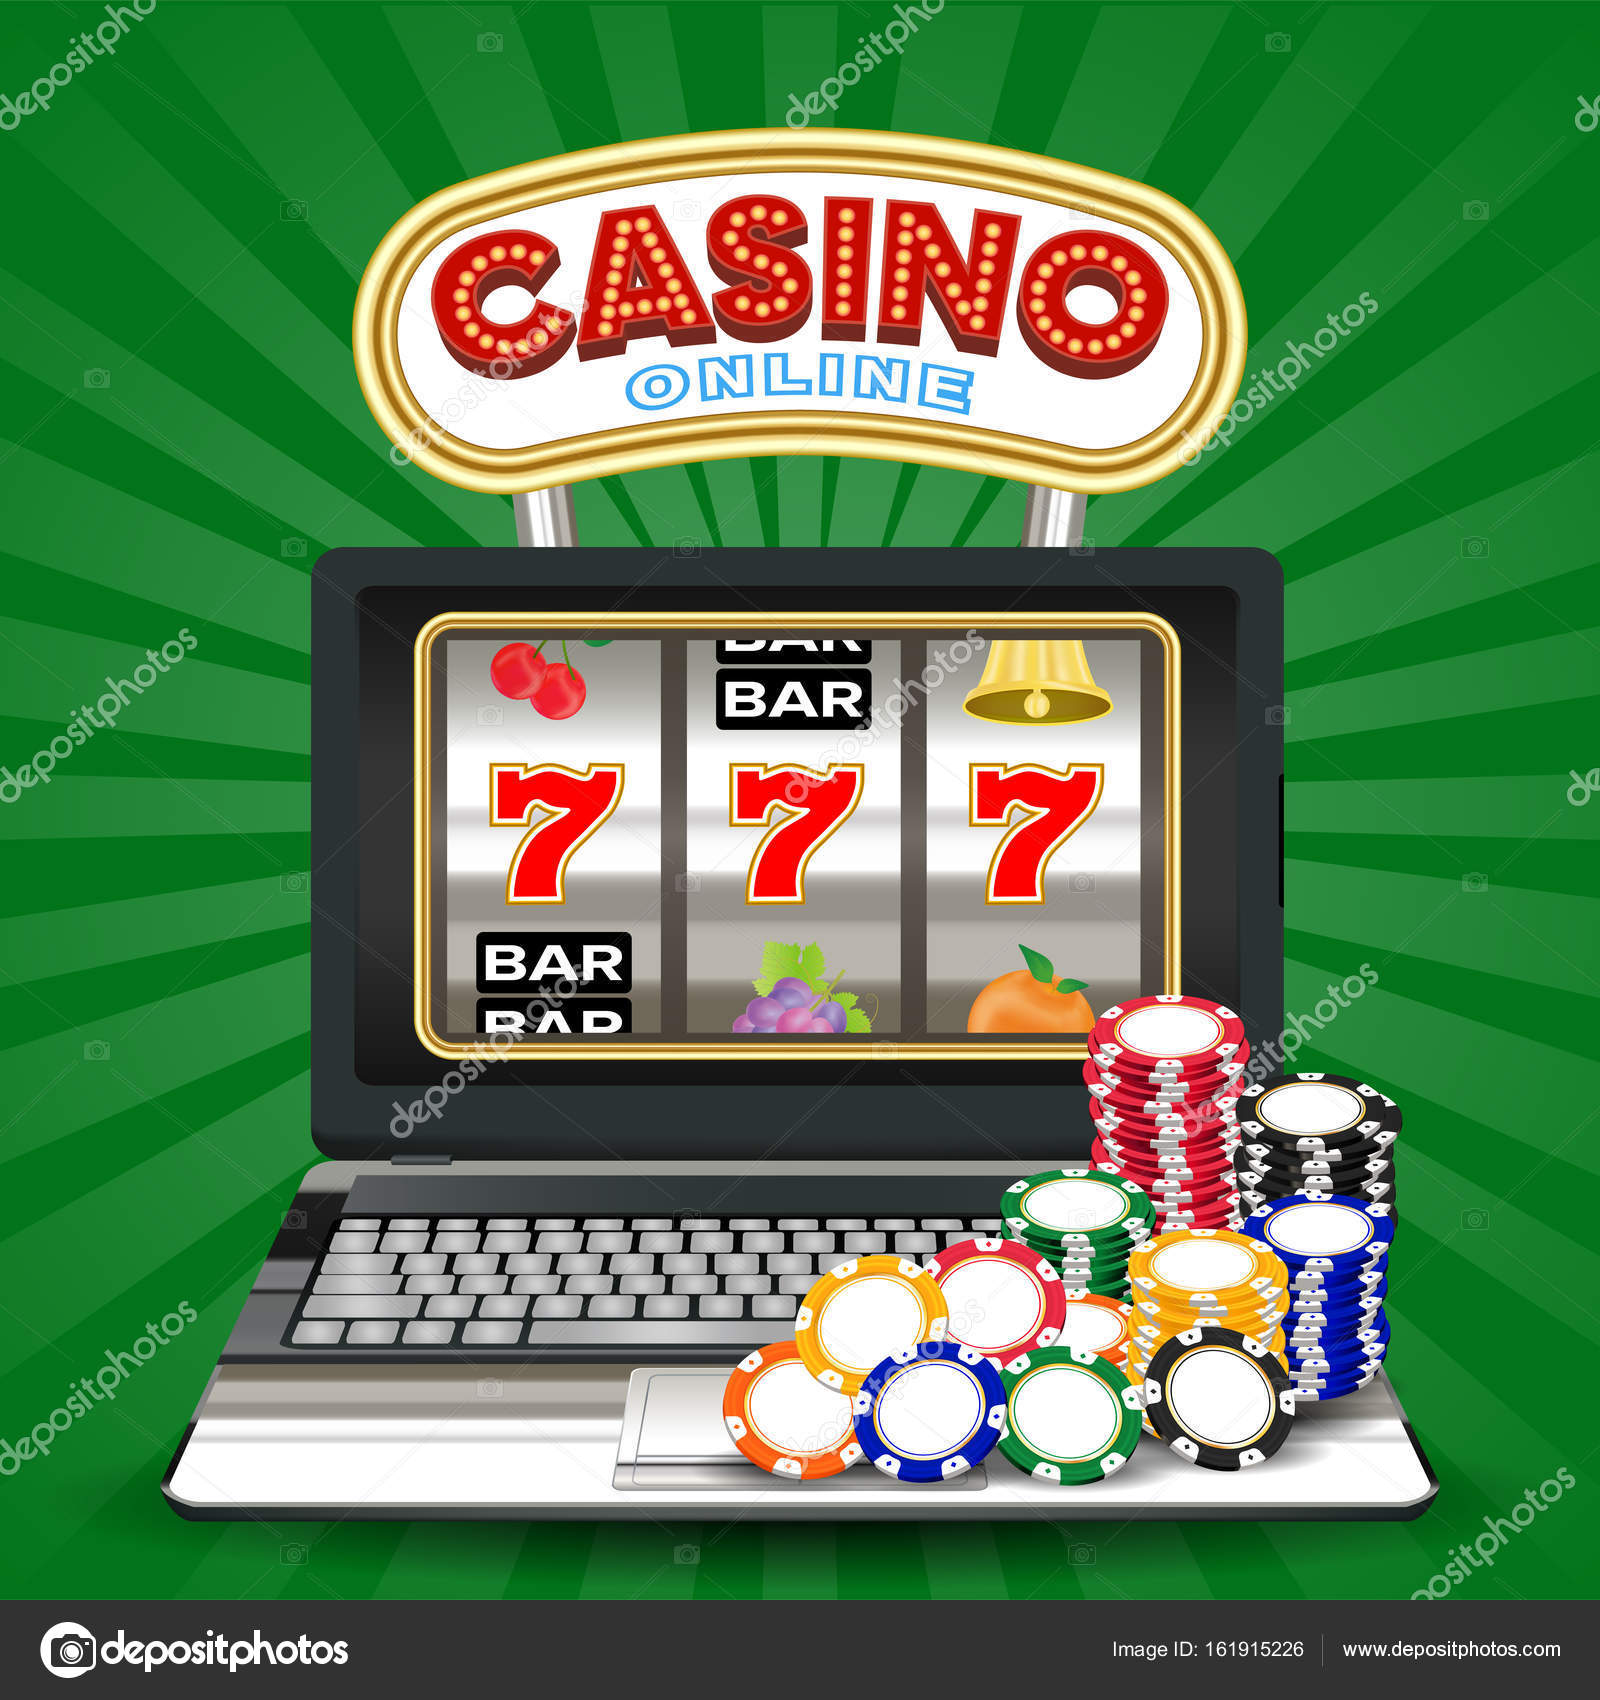 Игровые автоматы играть онлайн на деньги с выводом денег карту сбербанка